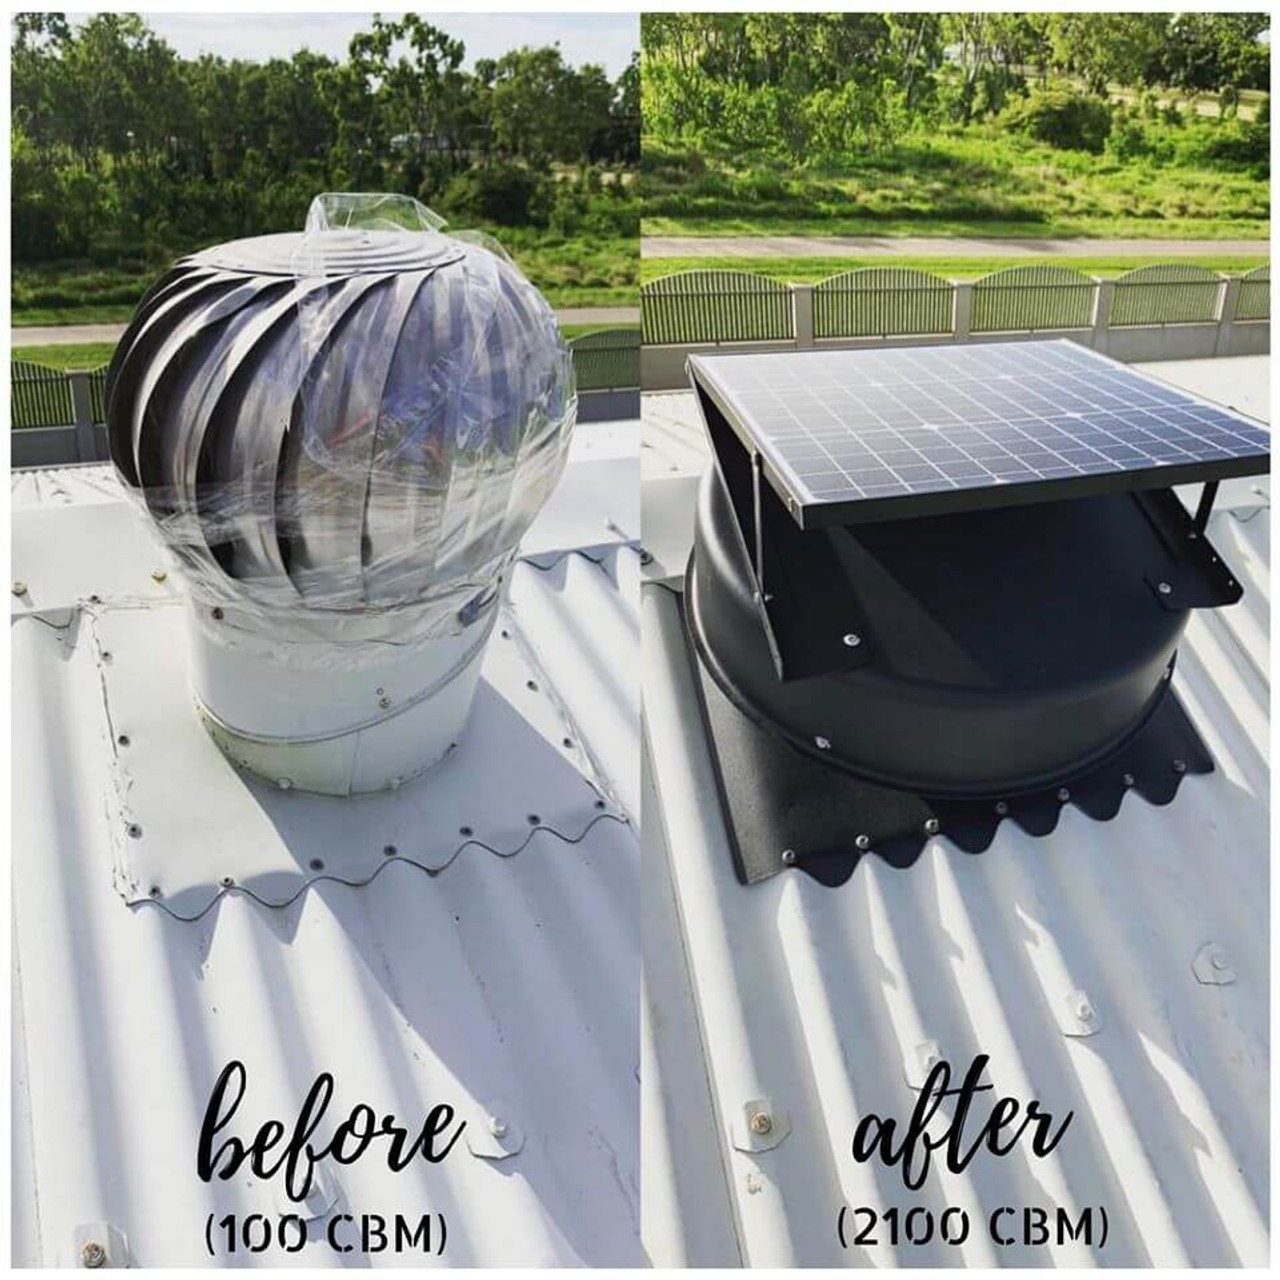 Solar Roof Ventilation Fan  Roof Ventilator Supply & Install in